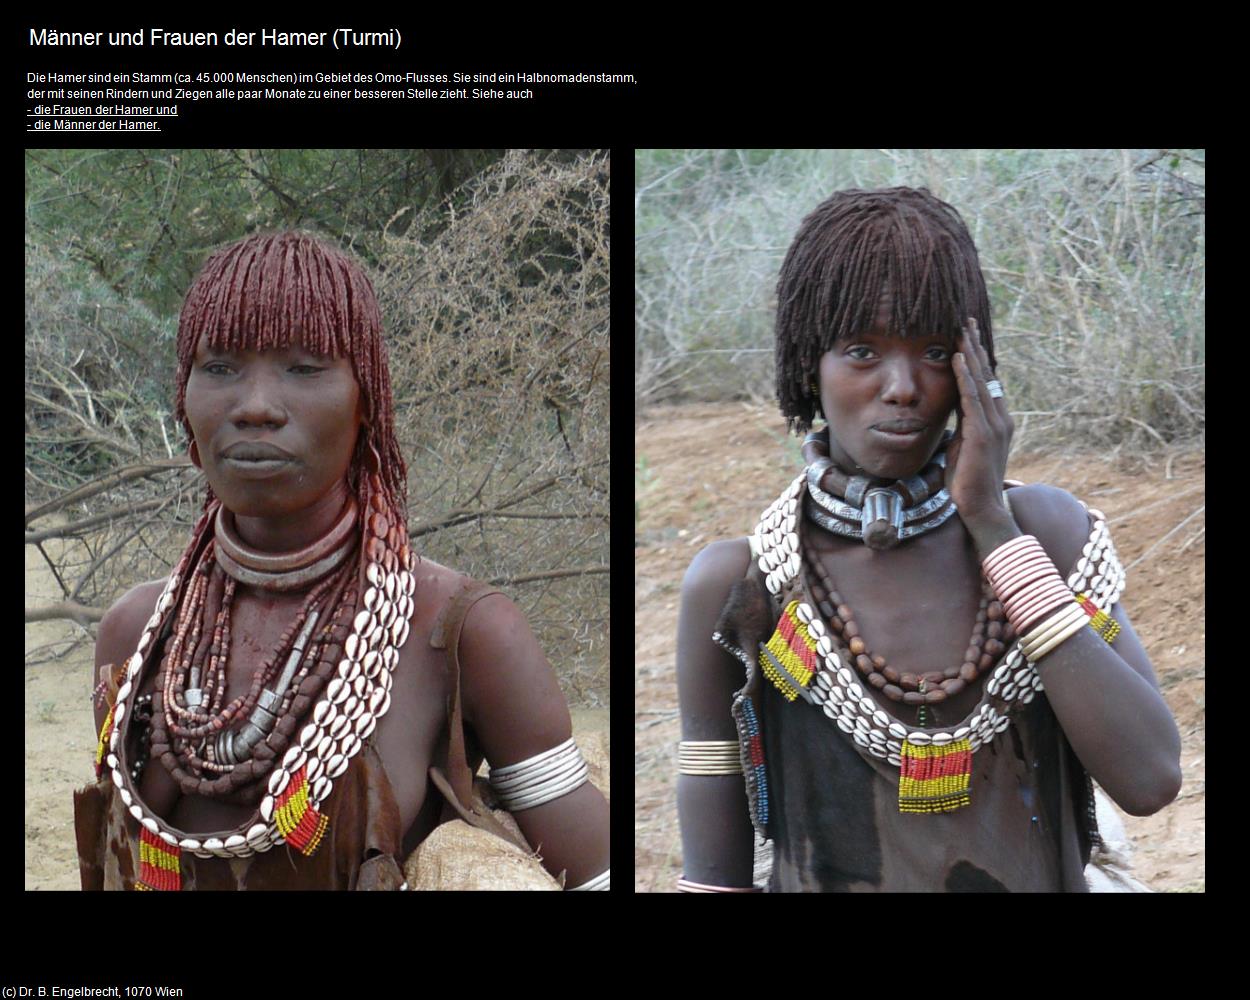 Männer und Frauen der Hamer (Turmi) in Äthiopien(c)B.Engelbrecht